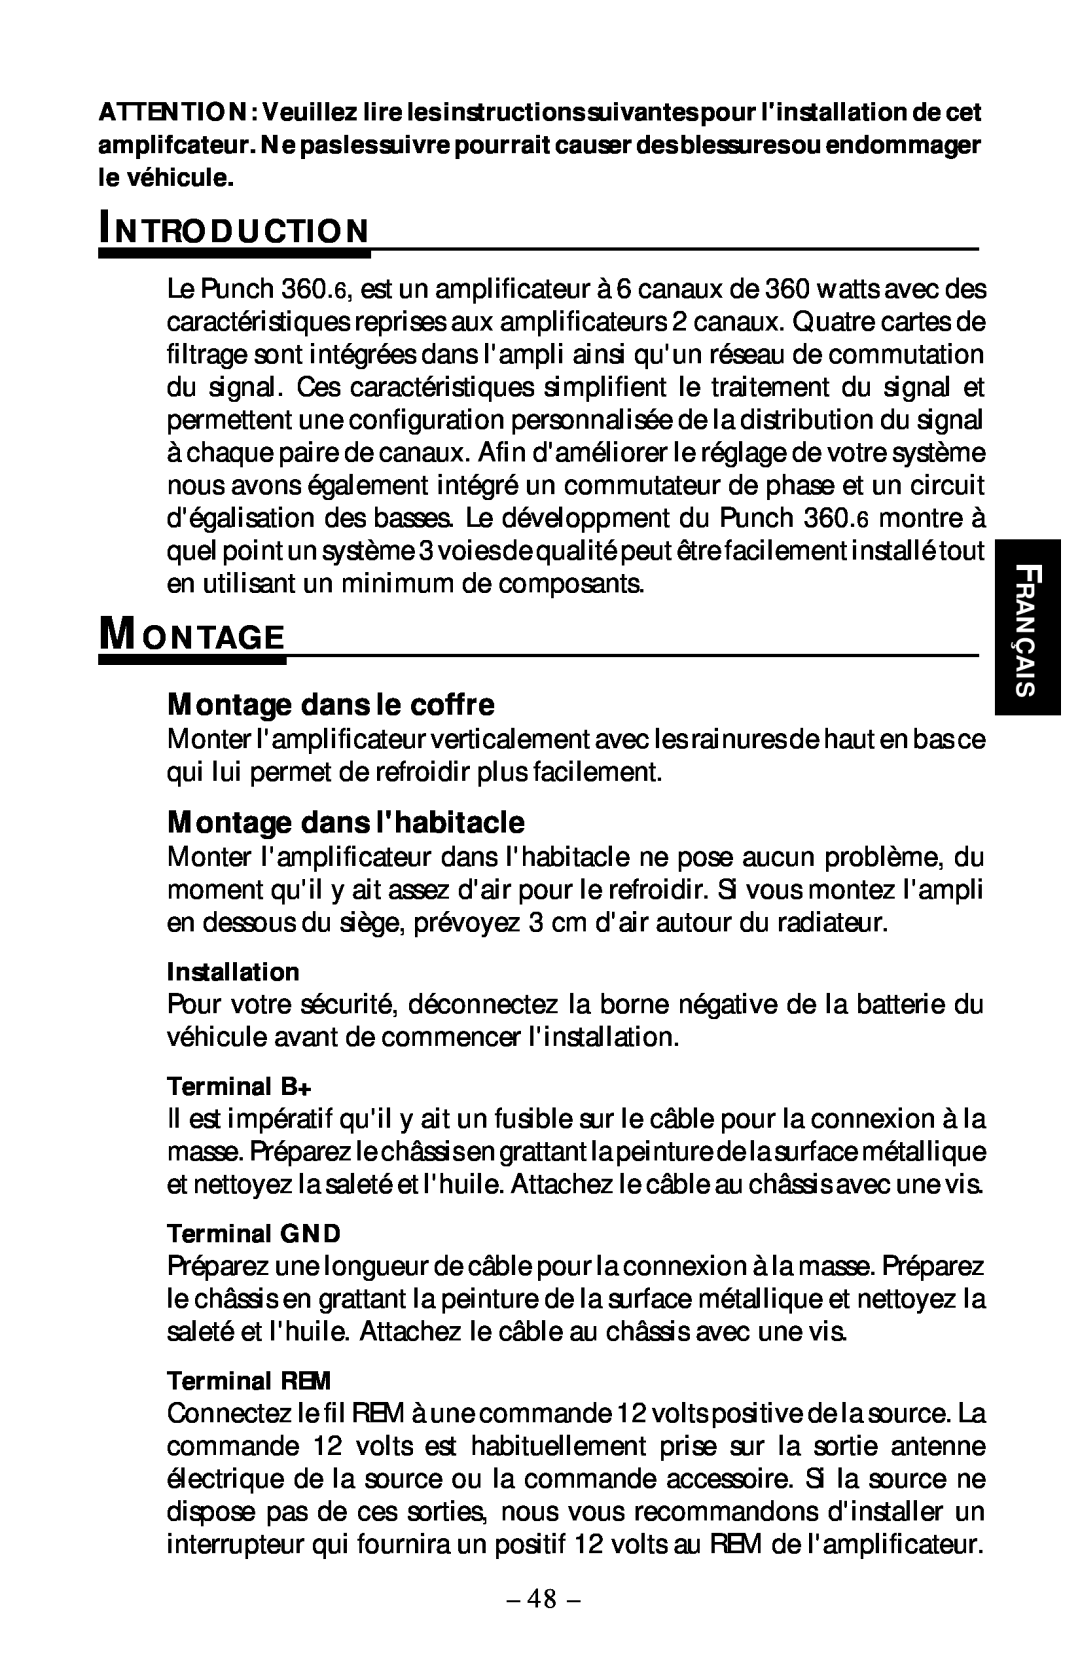 Rockford Fosgate 360.6 manual Introduction, Montage dans le coffre, Montage dans lhabitacle, Installation, Français 